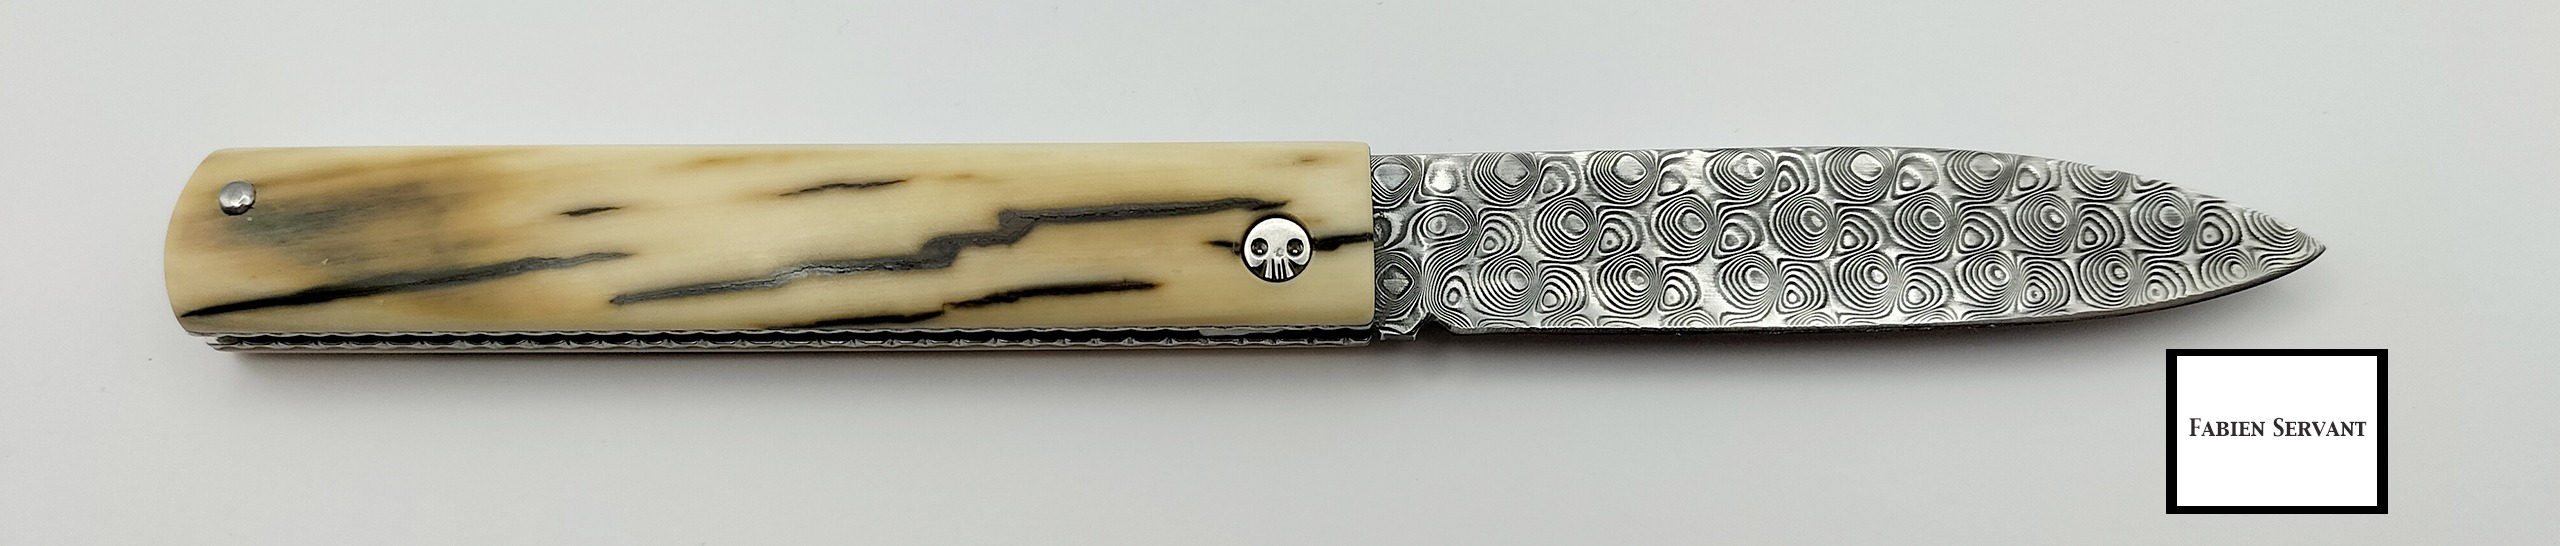 artisan coutellier fabien servant couteau